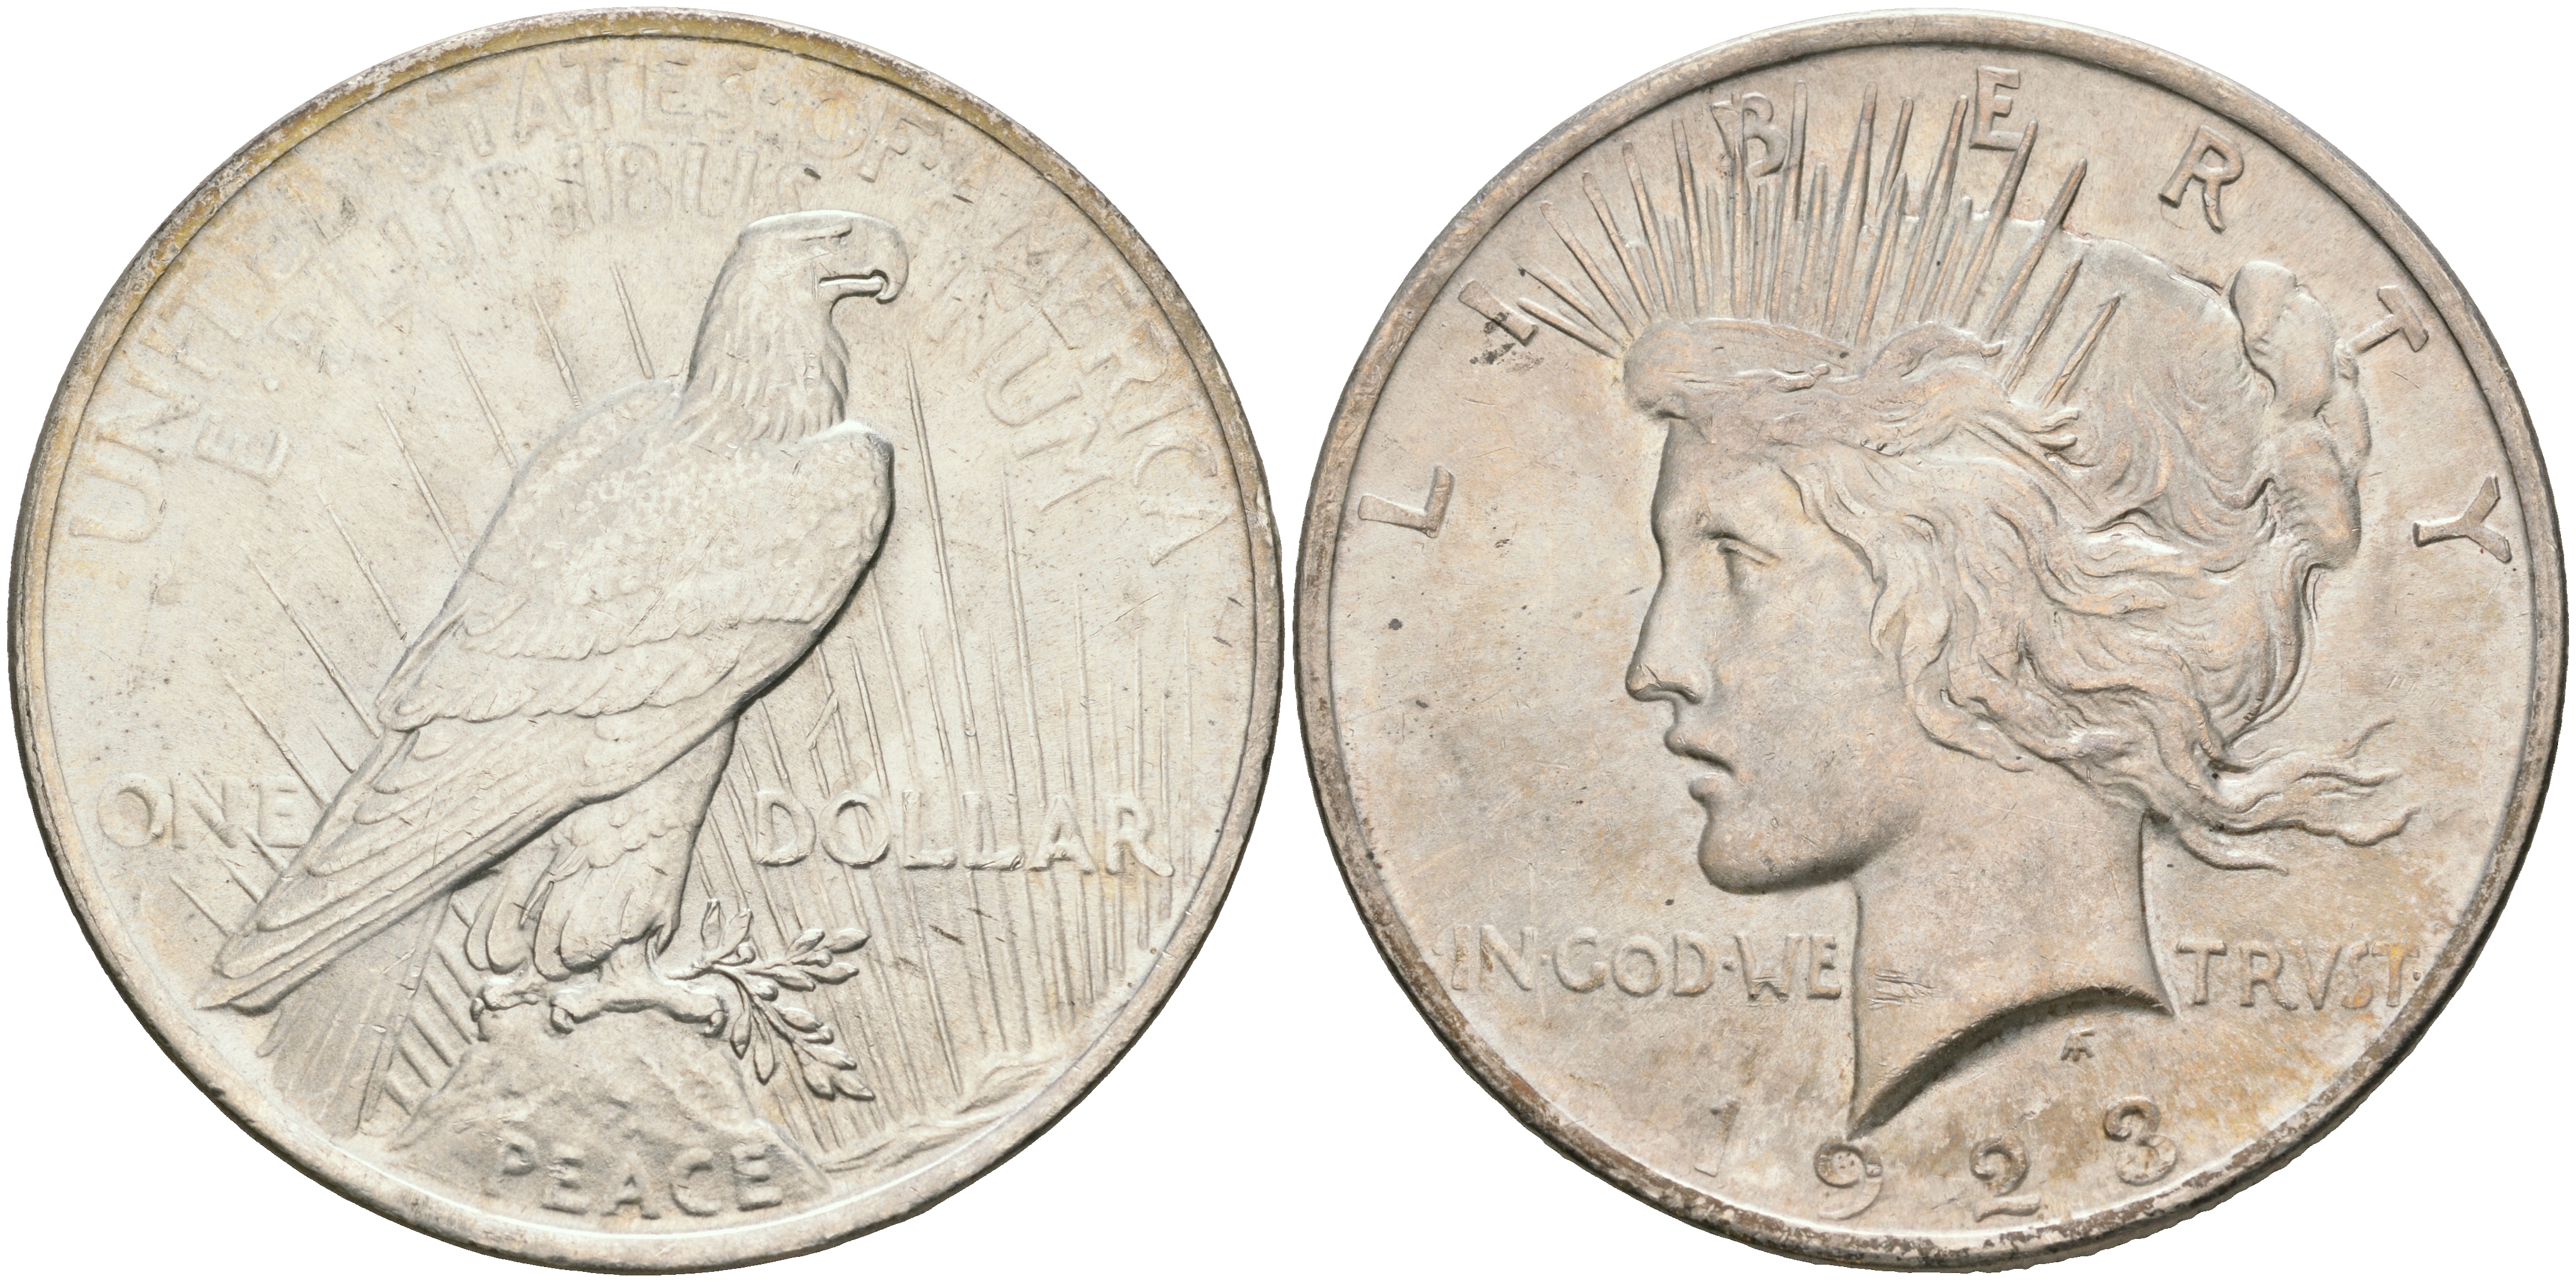 Купить монеты доллары сша. Серебряный доллар США 1922. Мирный доллар 1921. Монета 1 доллар США Либерти. Liberty 1922 монета.